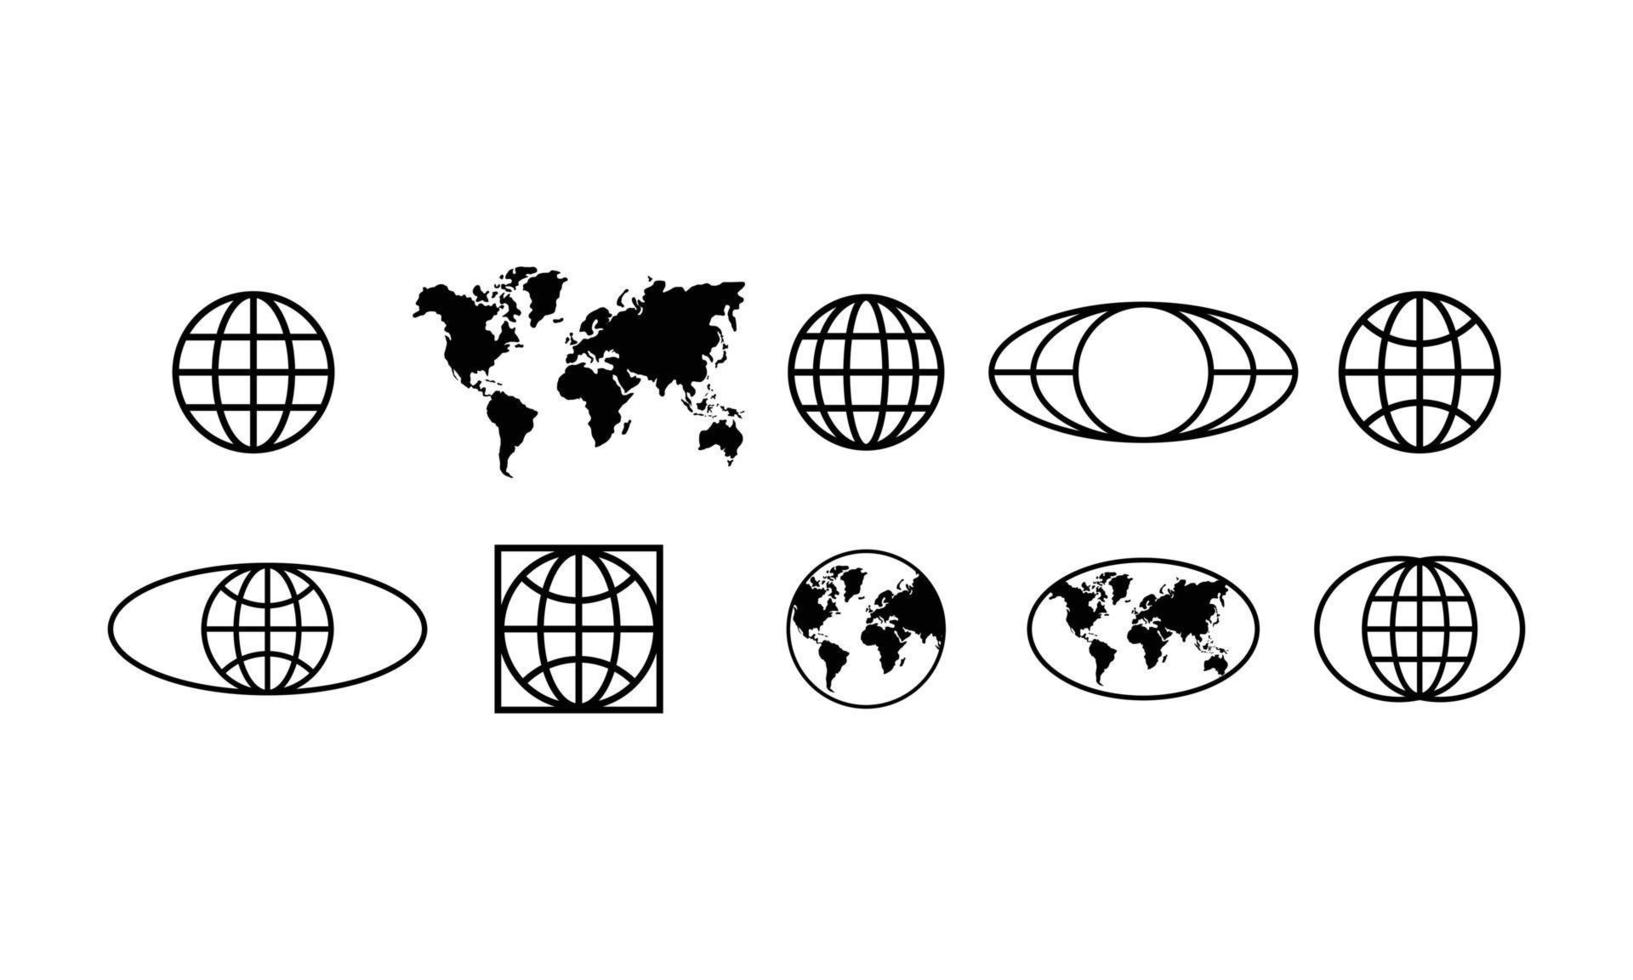 Sammlungssatz aus einfacher Erde, Globus, Welt und Karte im schwarz-weißen Umrissstil. geometrische Formenelemente isoliert auf weißem Hintergrund im Logo-Design-Vektor. vektor